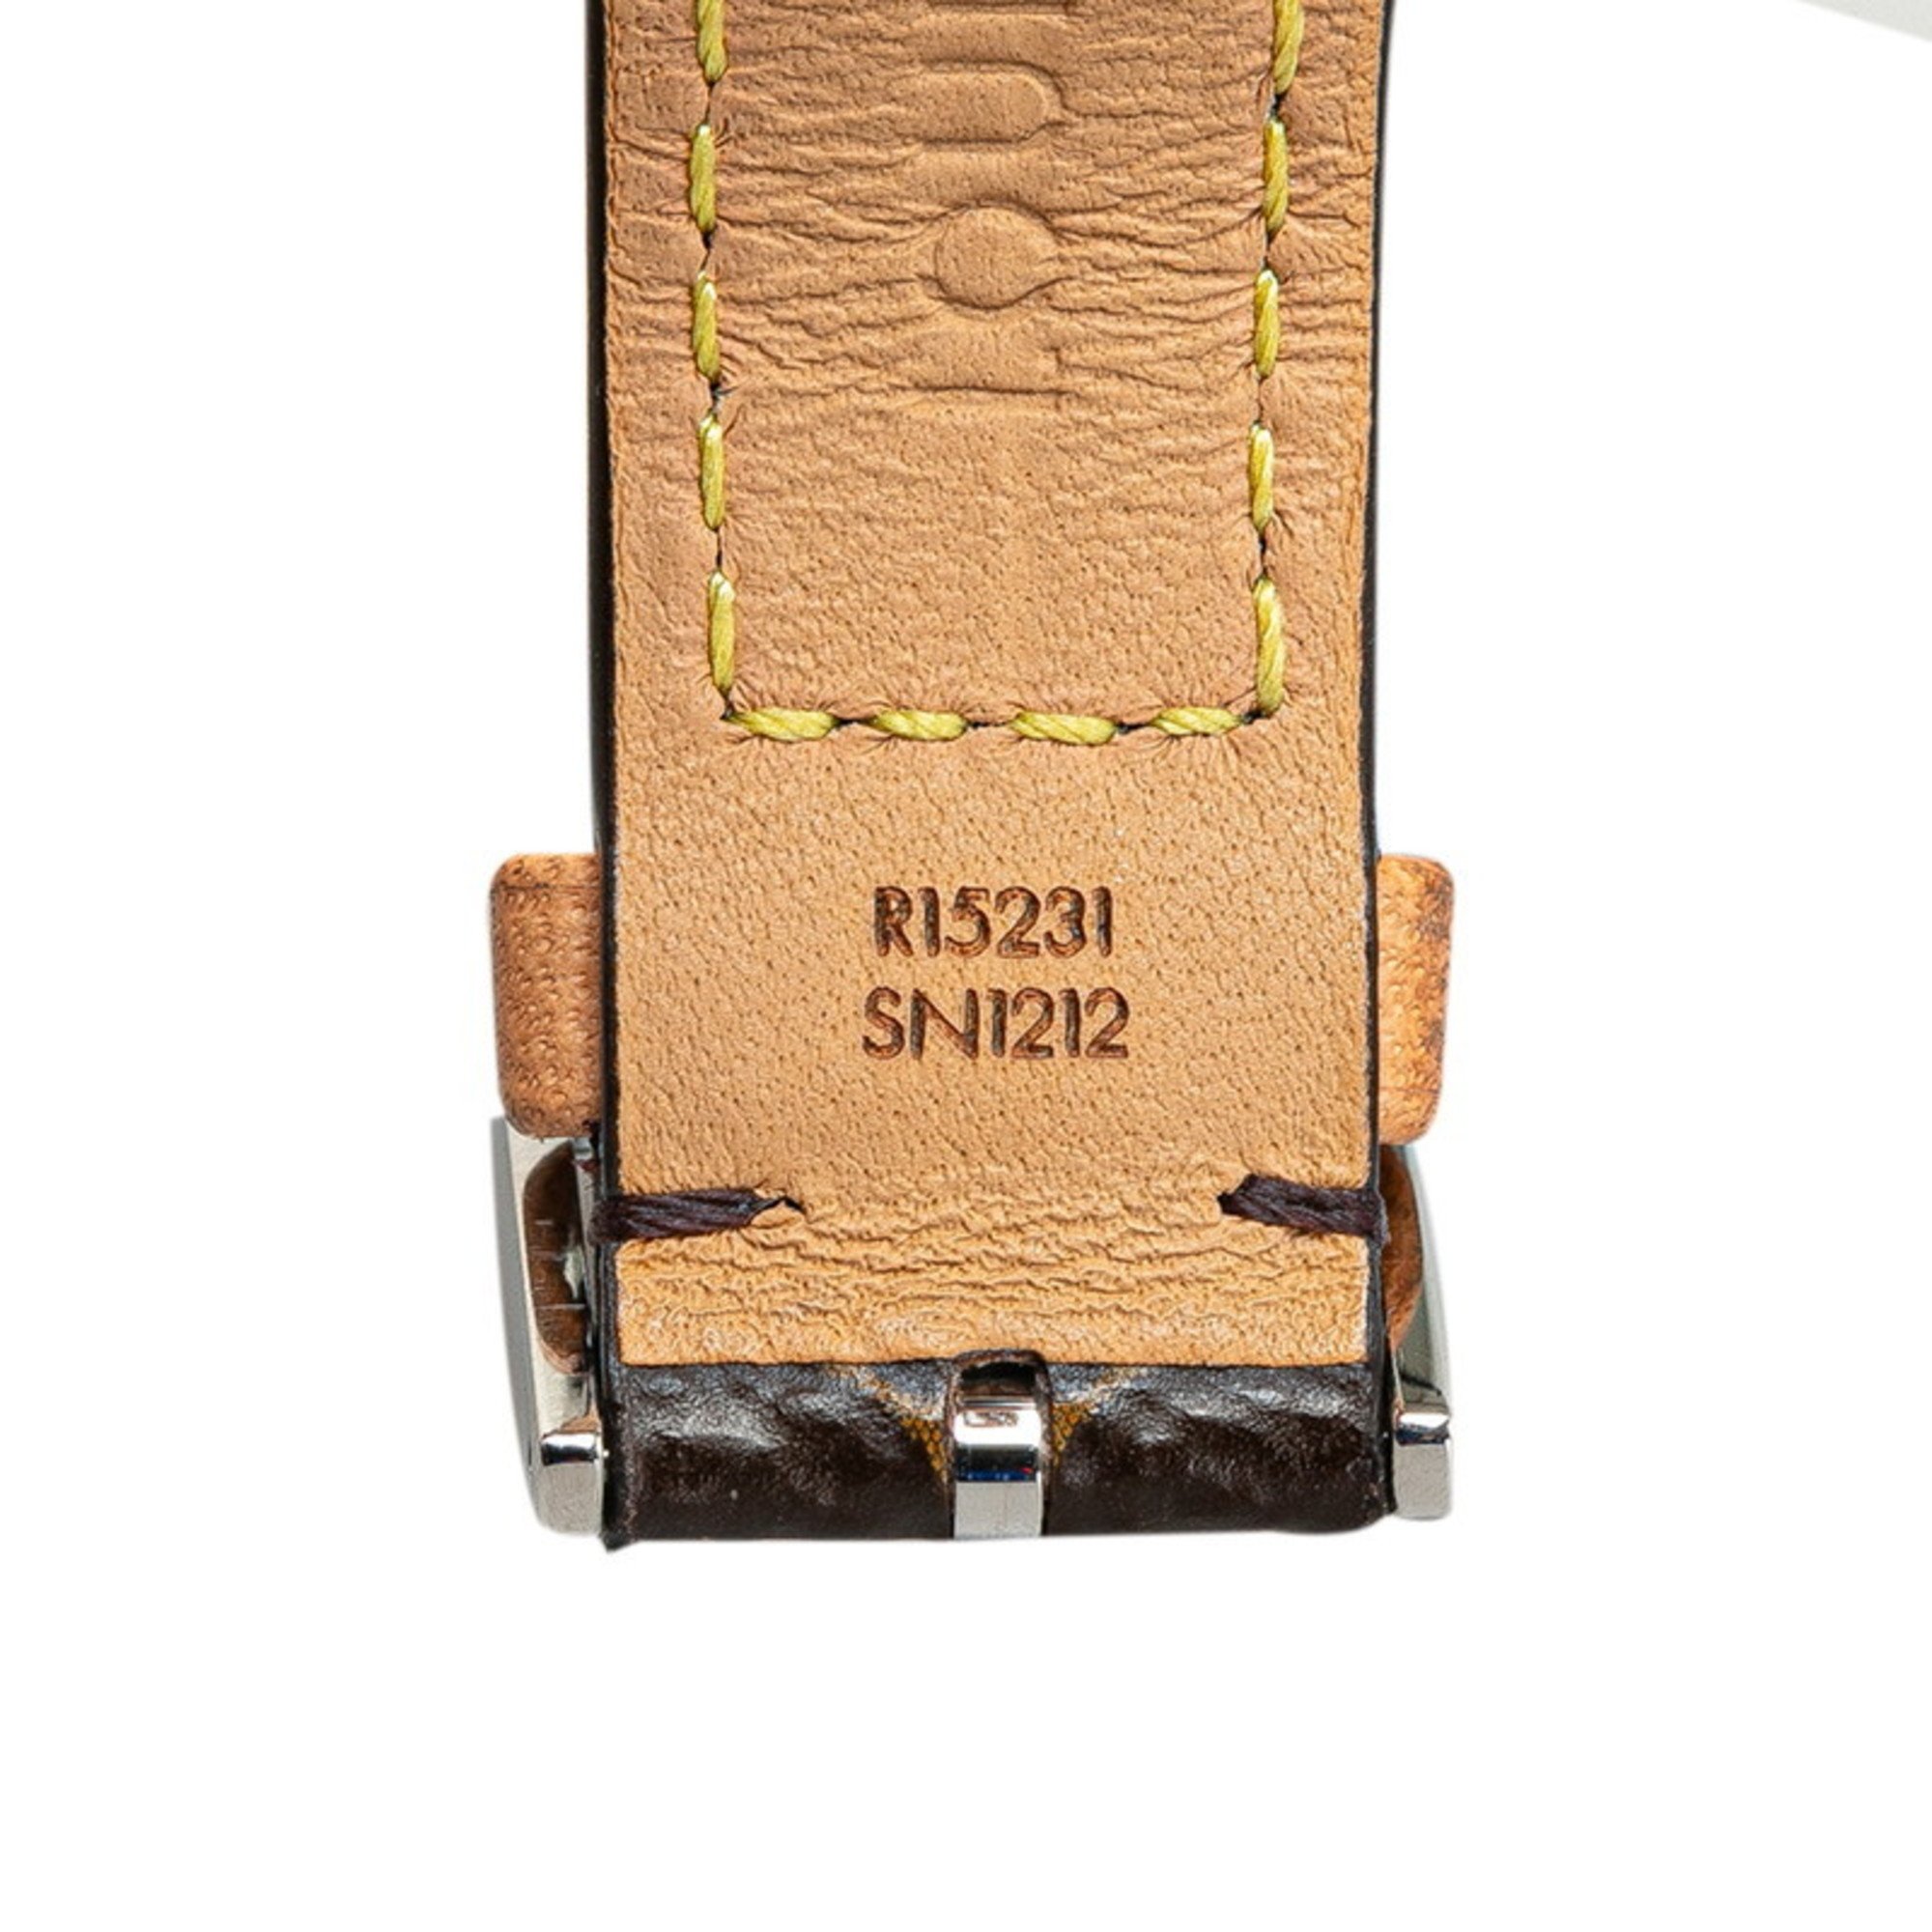 Louis Vuitton Monogram Tambour Canvas Strap M Watch R15231 Automatic Brown Dial PVC Leather Women's LOUIS VUITTON